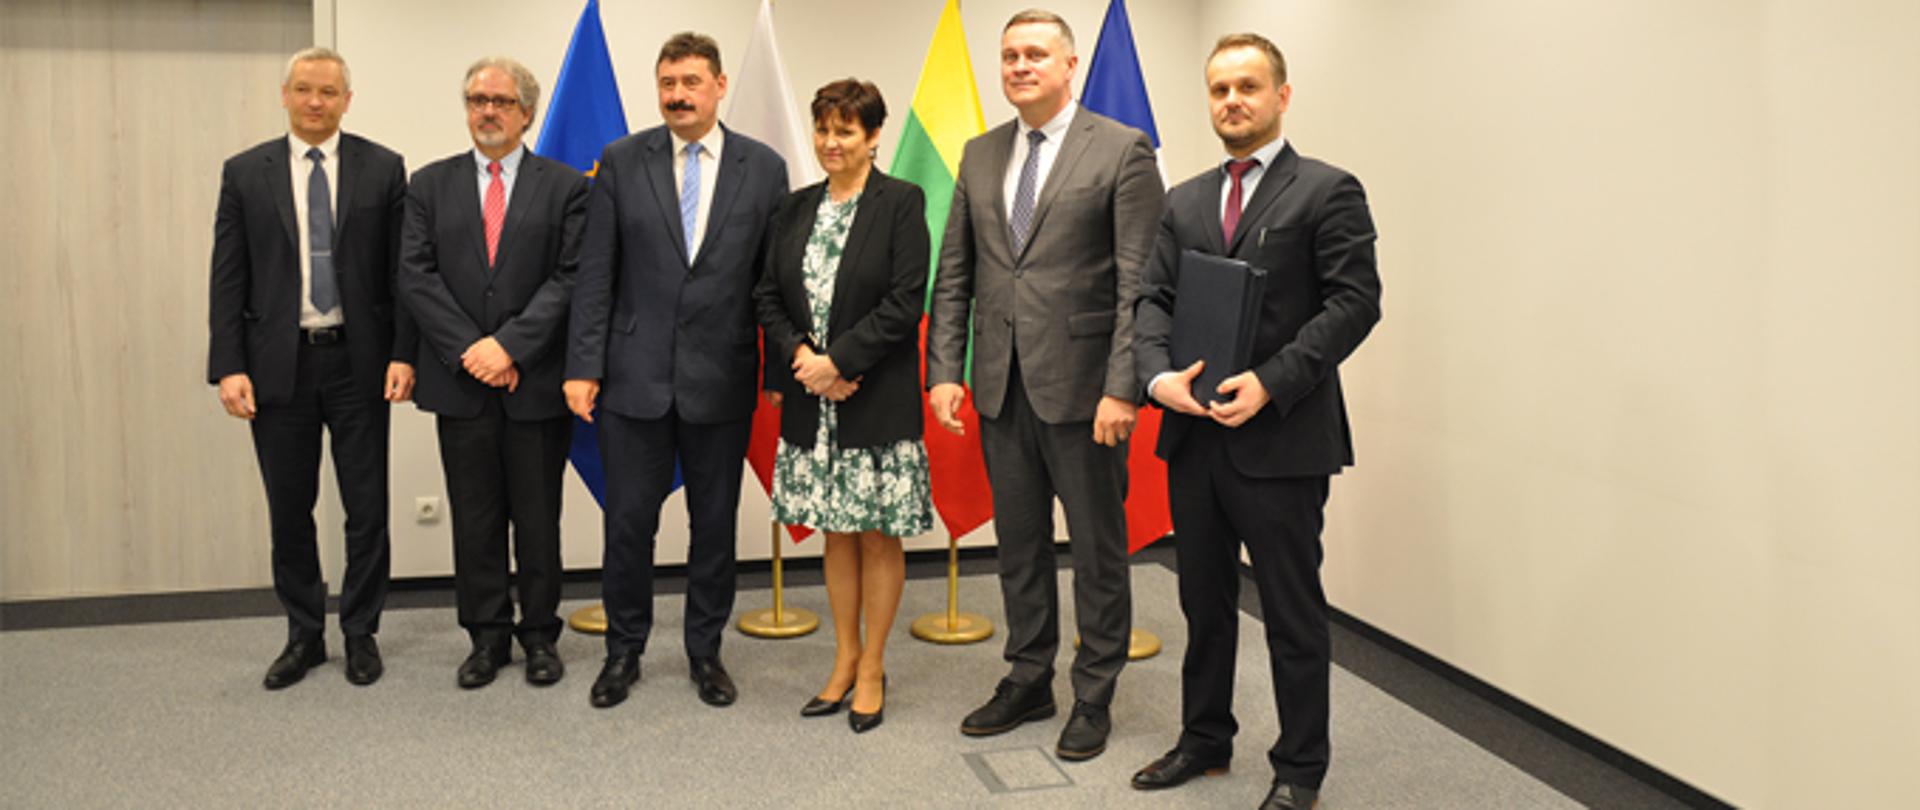 Sygnatariusze umowy w towarzystwie ministra Ryszarda Bartosika oraz Dariusza Olkiewicza zastępcy prezesa ARiMR